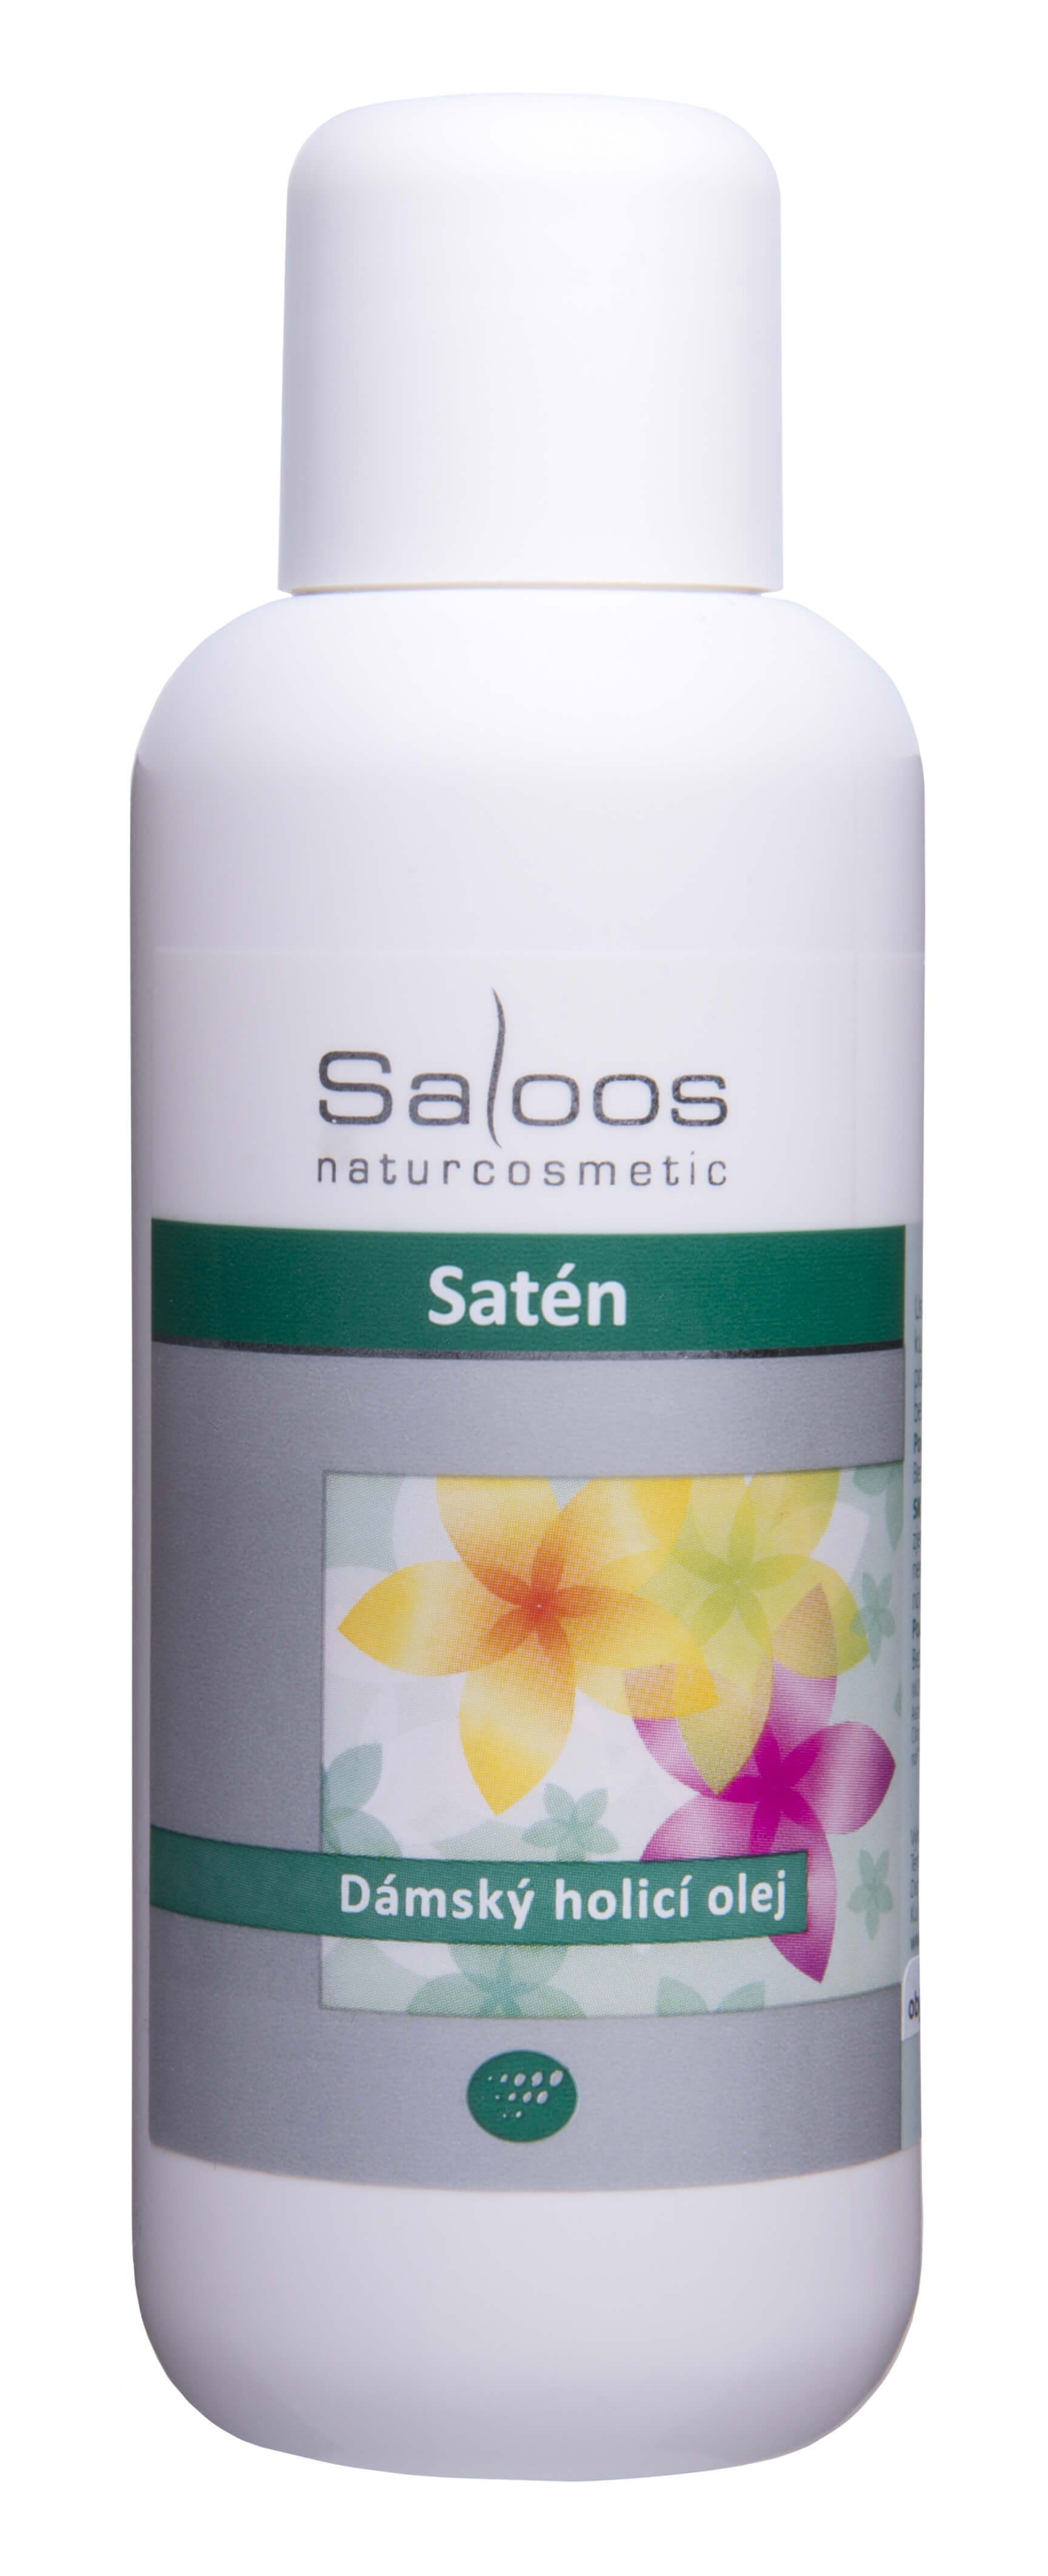 Saloos Satén - dámsky holiaci olej 250 ml + 2 mesiace na vrátenie tovaru